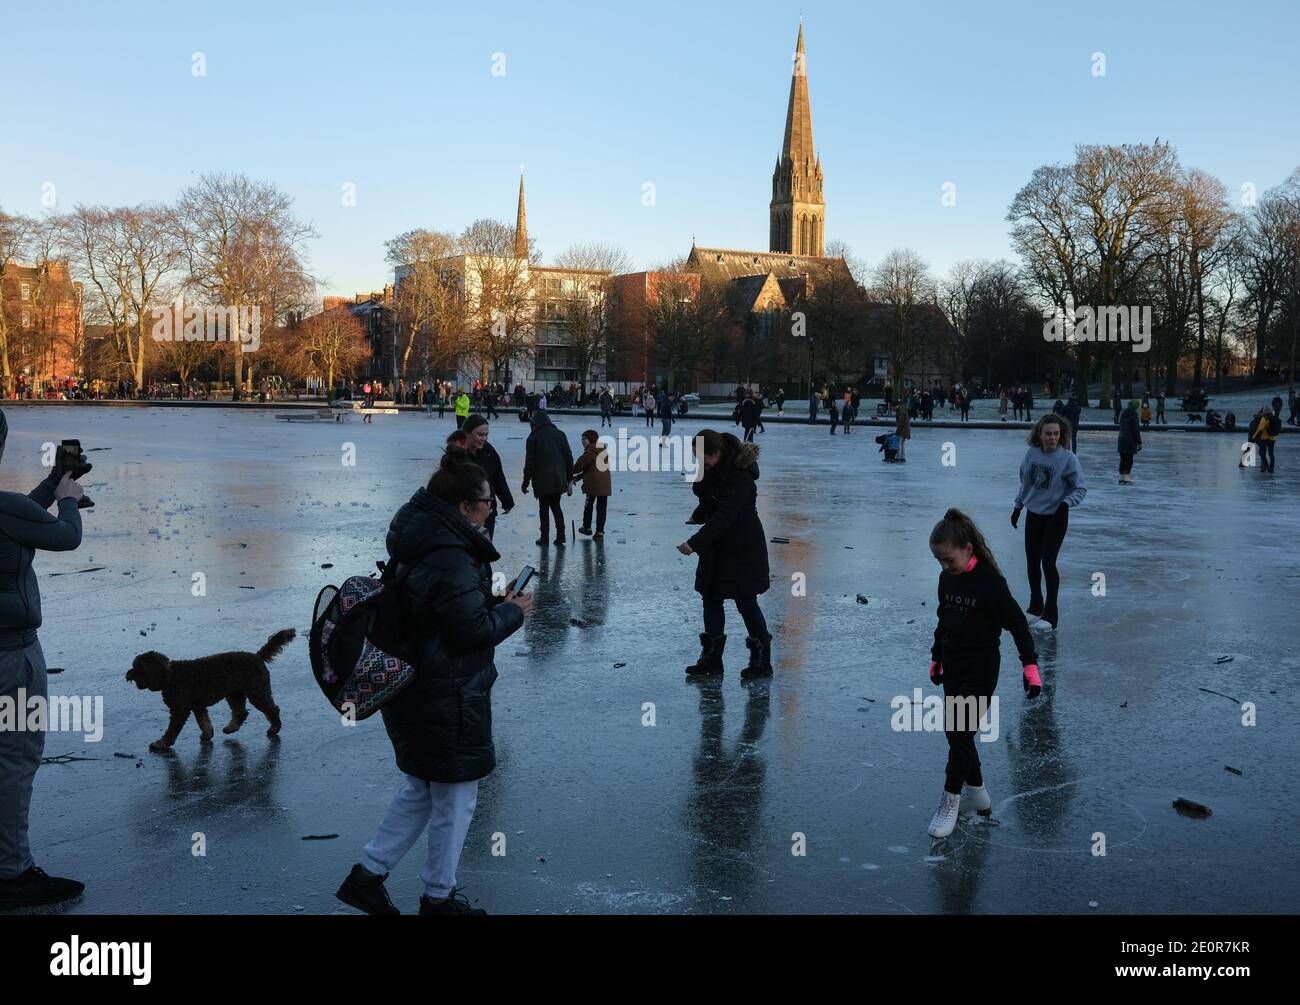 Glasgow, Großbritannien, 2. Januar 2021. Die Leute nutzen das kalte Wetter zum Schlittschuhlaufen und spazieren auf dem gefrorenen Bootsteich im Queen's Park, in der Südseite der Stadt. Die Polizei entfernte schließlich alle aus dem Eis, weil sie sich Sorgen um die Sicherheit gemacht hatte. Foto: Jeremy Sutton-Hibbert/ Alamy Live News Stockfoto